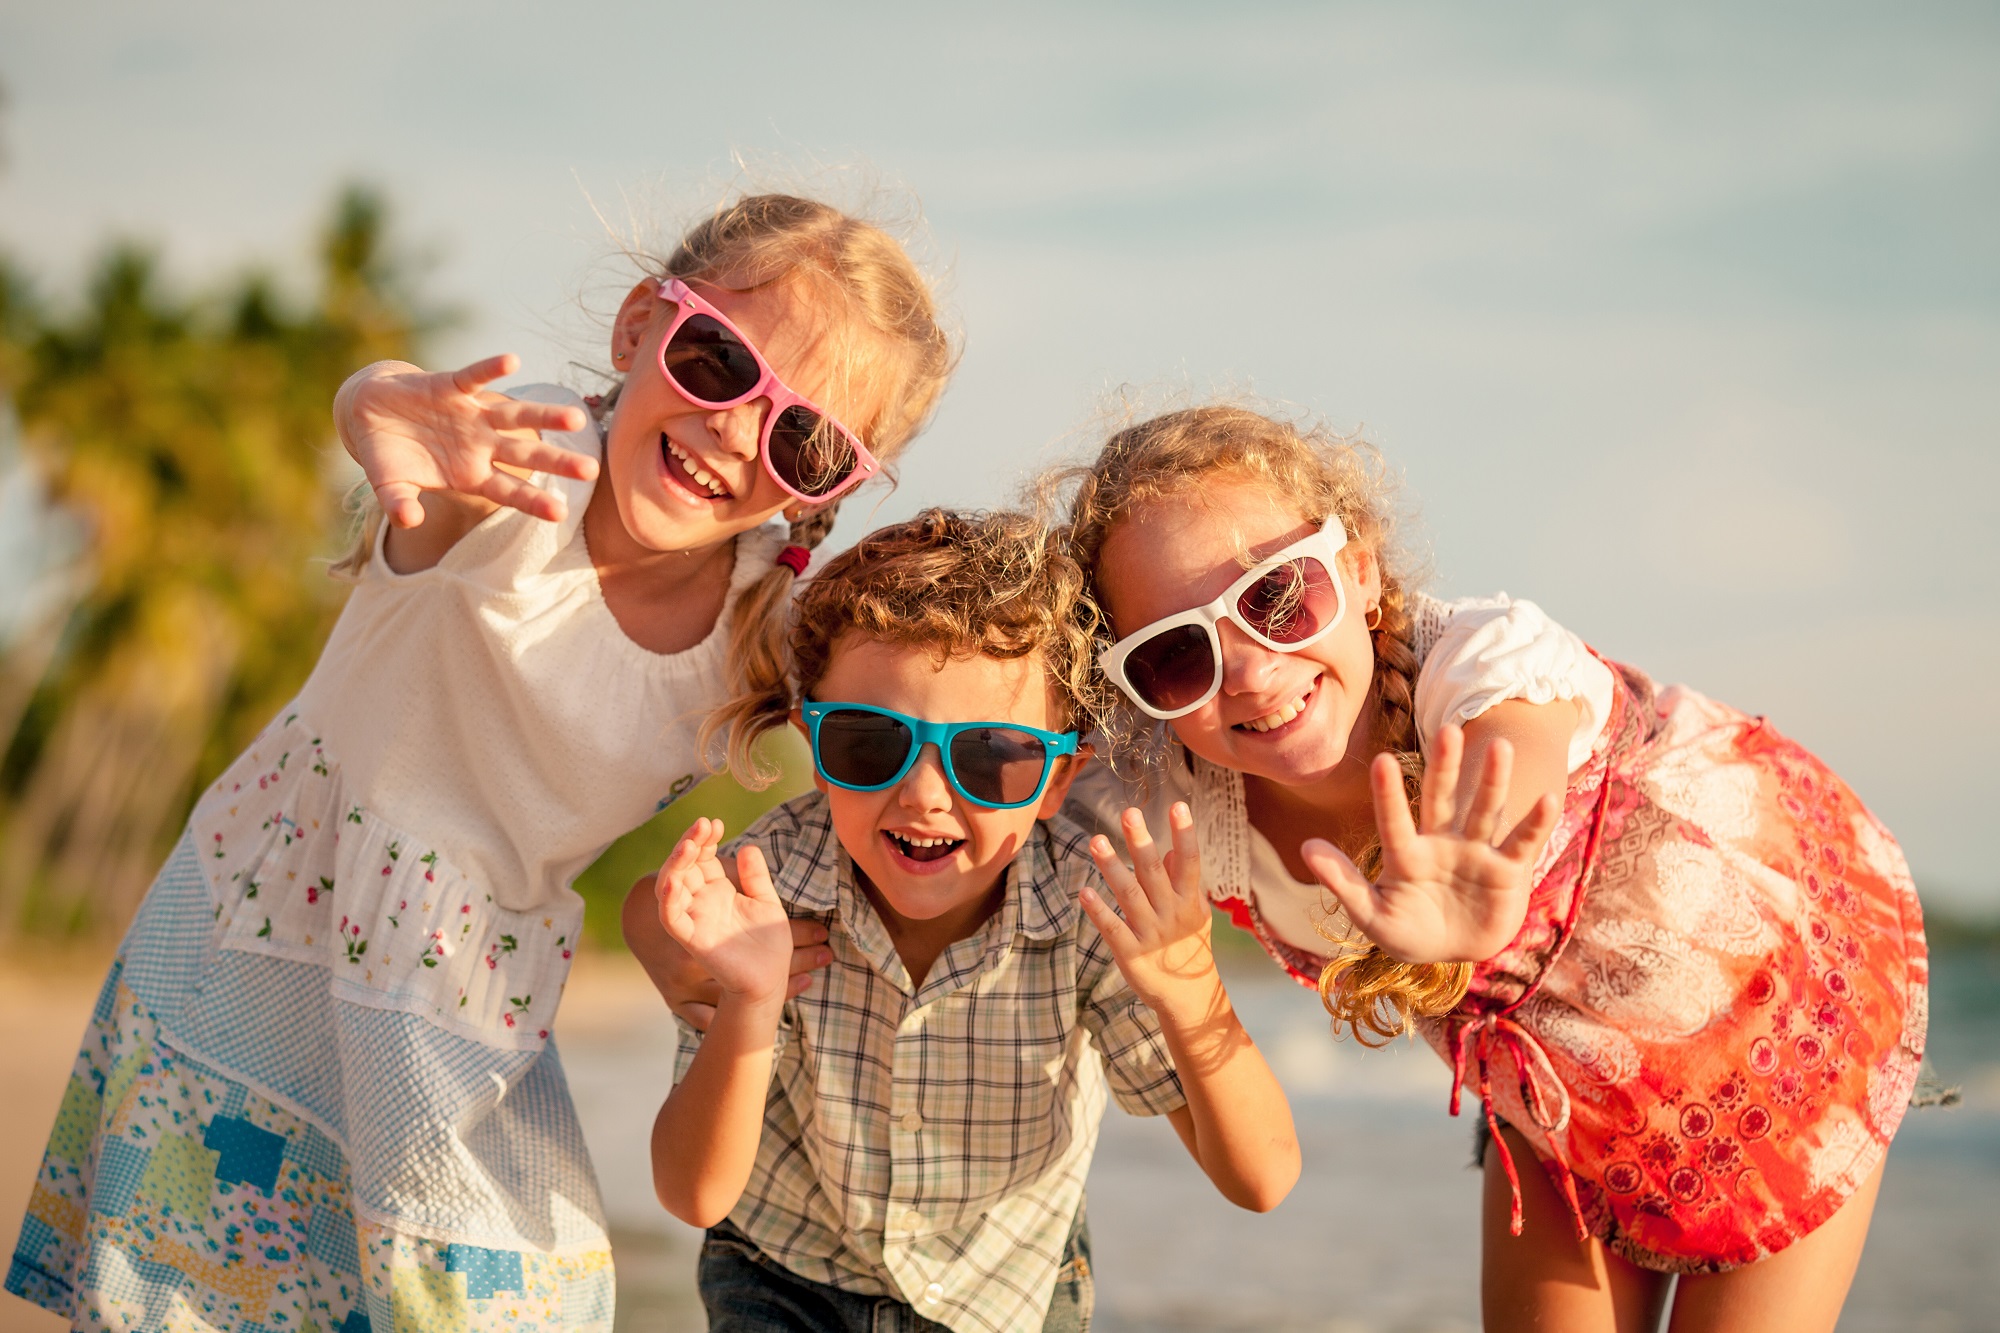 Летние праздники в календаре 2018 года. Источник фото: Shutterstock